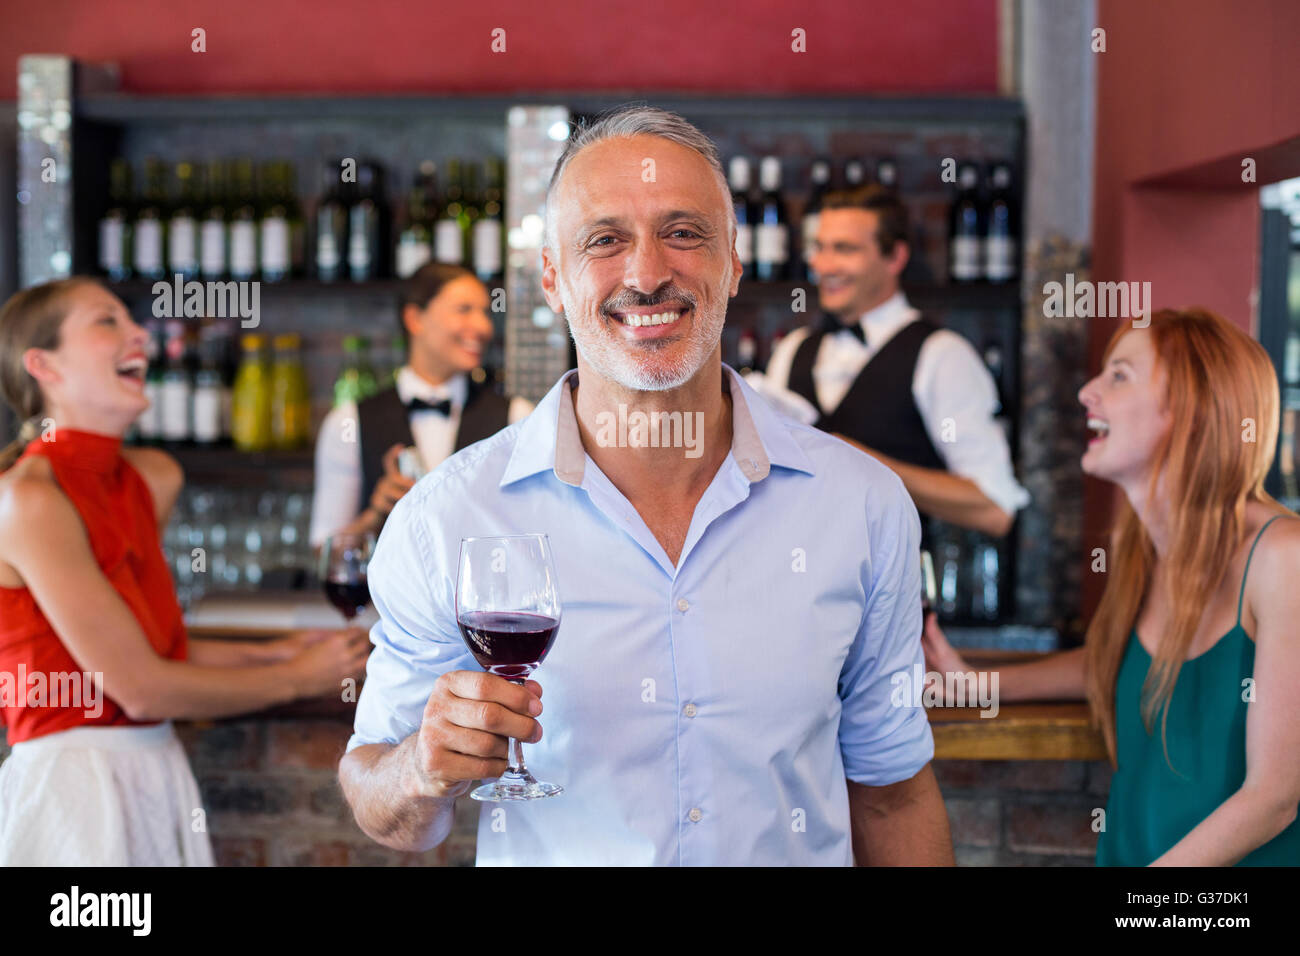 Retrato del hombre sujetando una copa de vino delante del mostrador de bar Foto de stock